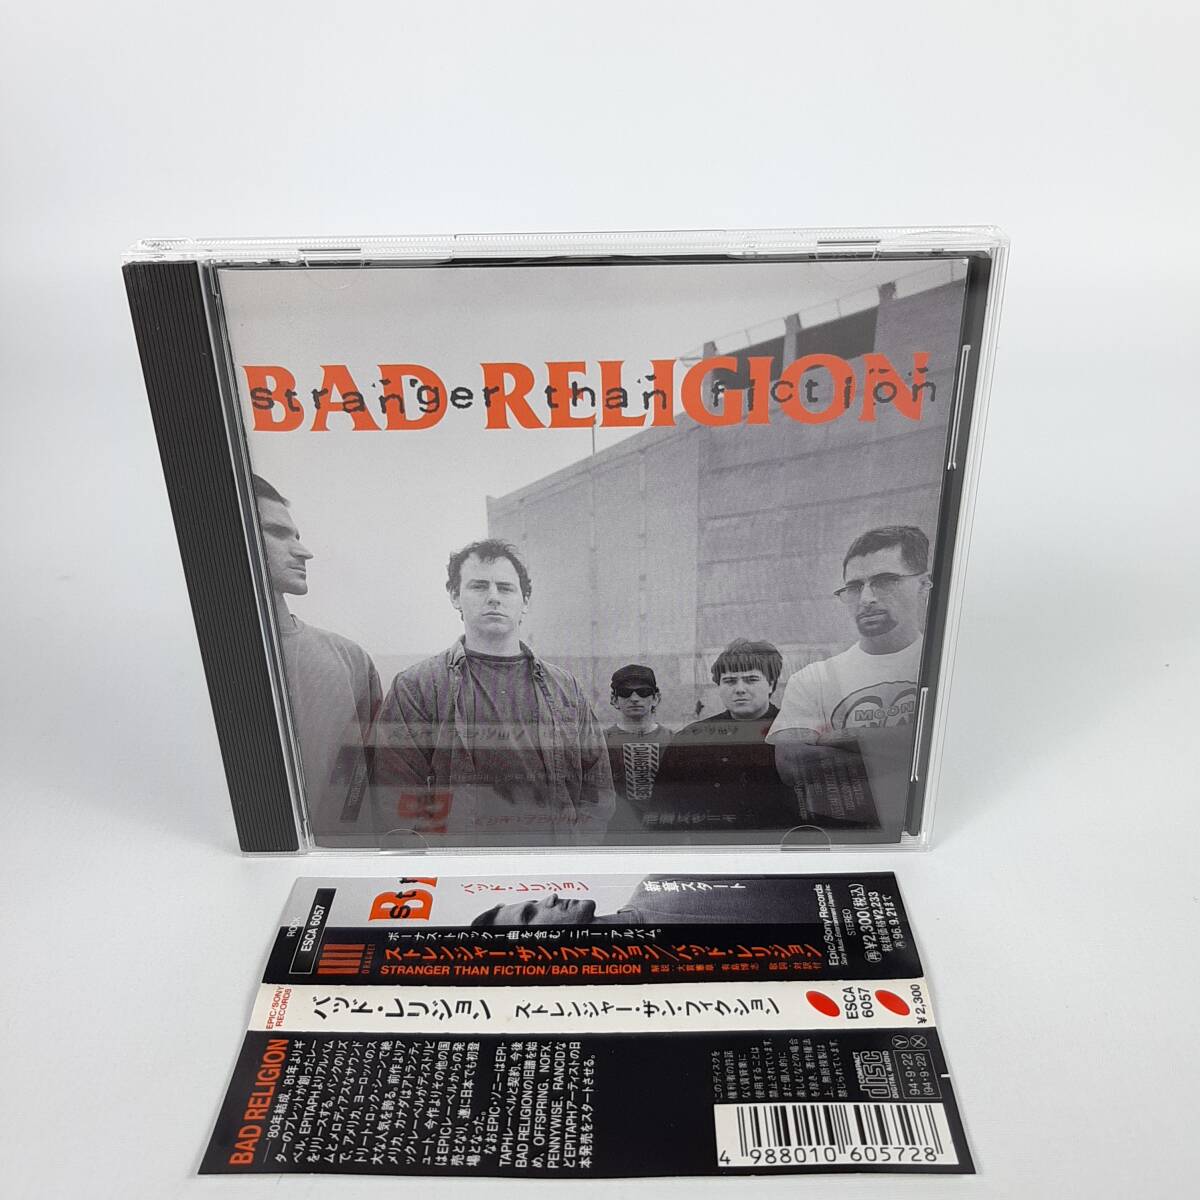 [ с поясом оби ]Bad Religion - Stranger Than Fiction записано в Японии bado* rely John / -тактный Ranger * The n*fi расческа .n